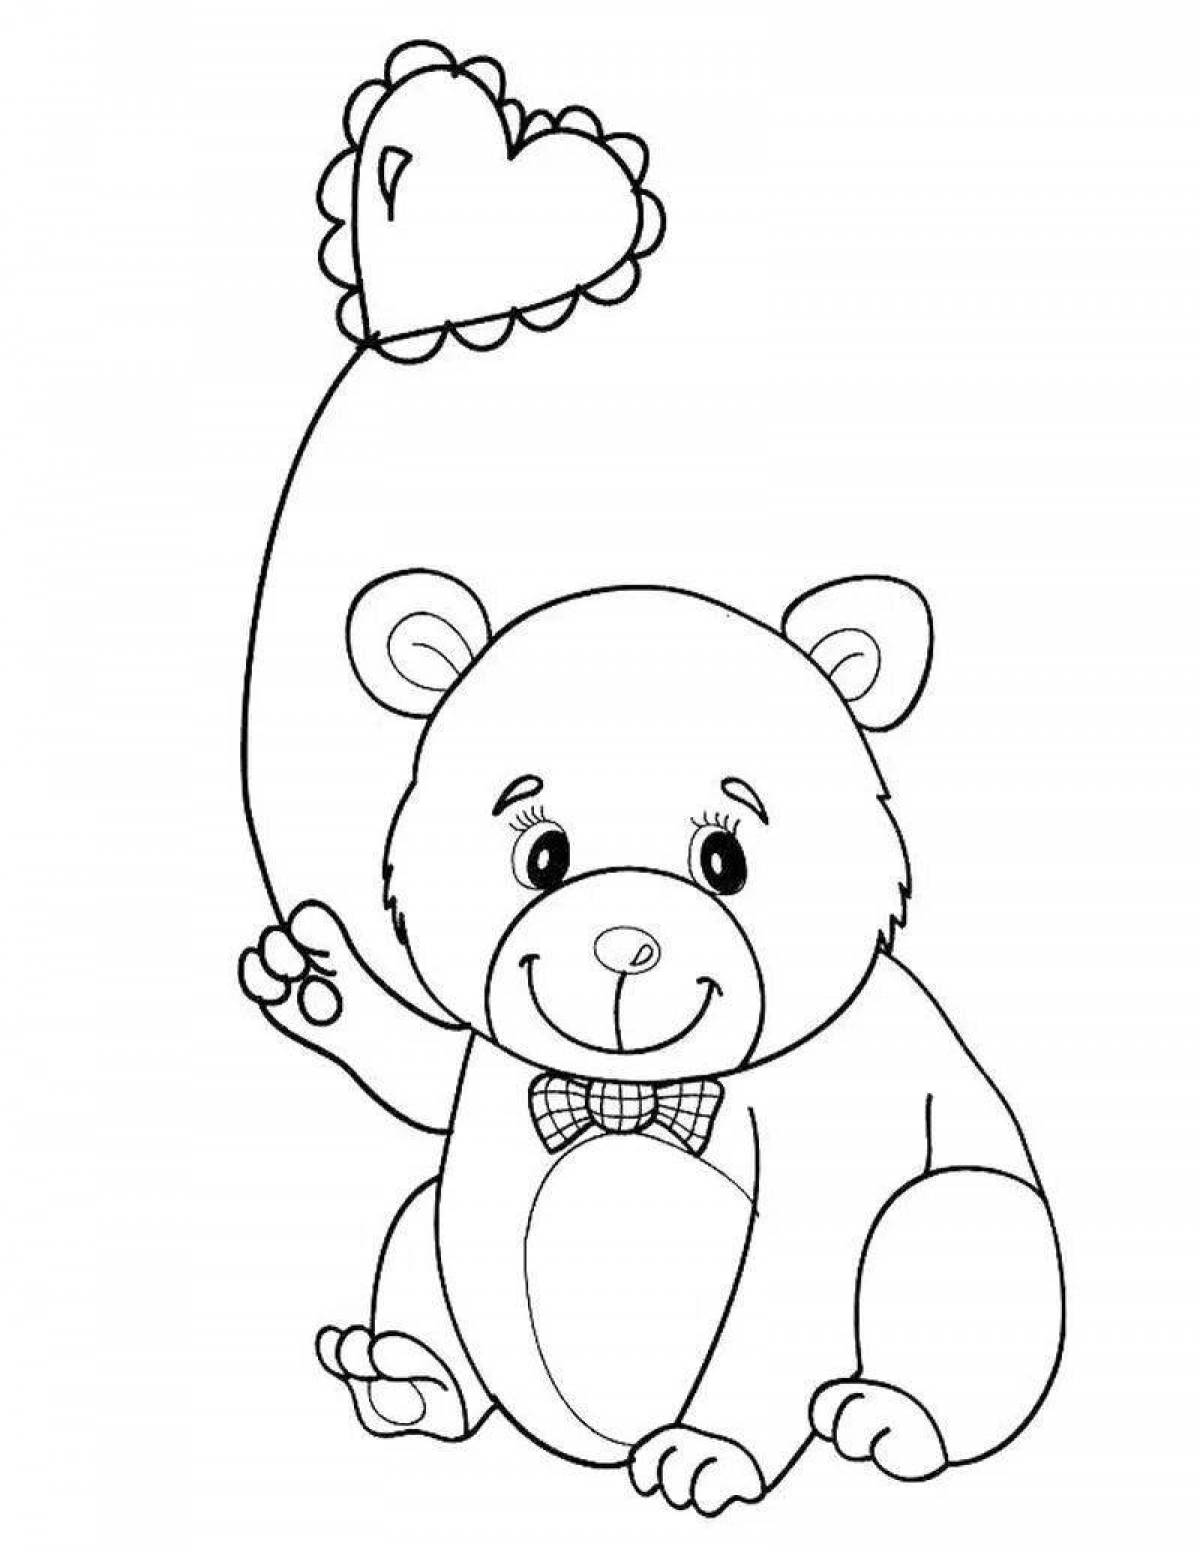 Медвежонок-панда-раскраска snuggly